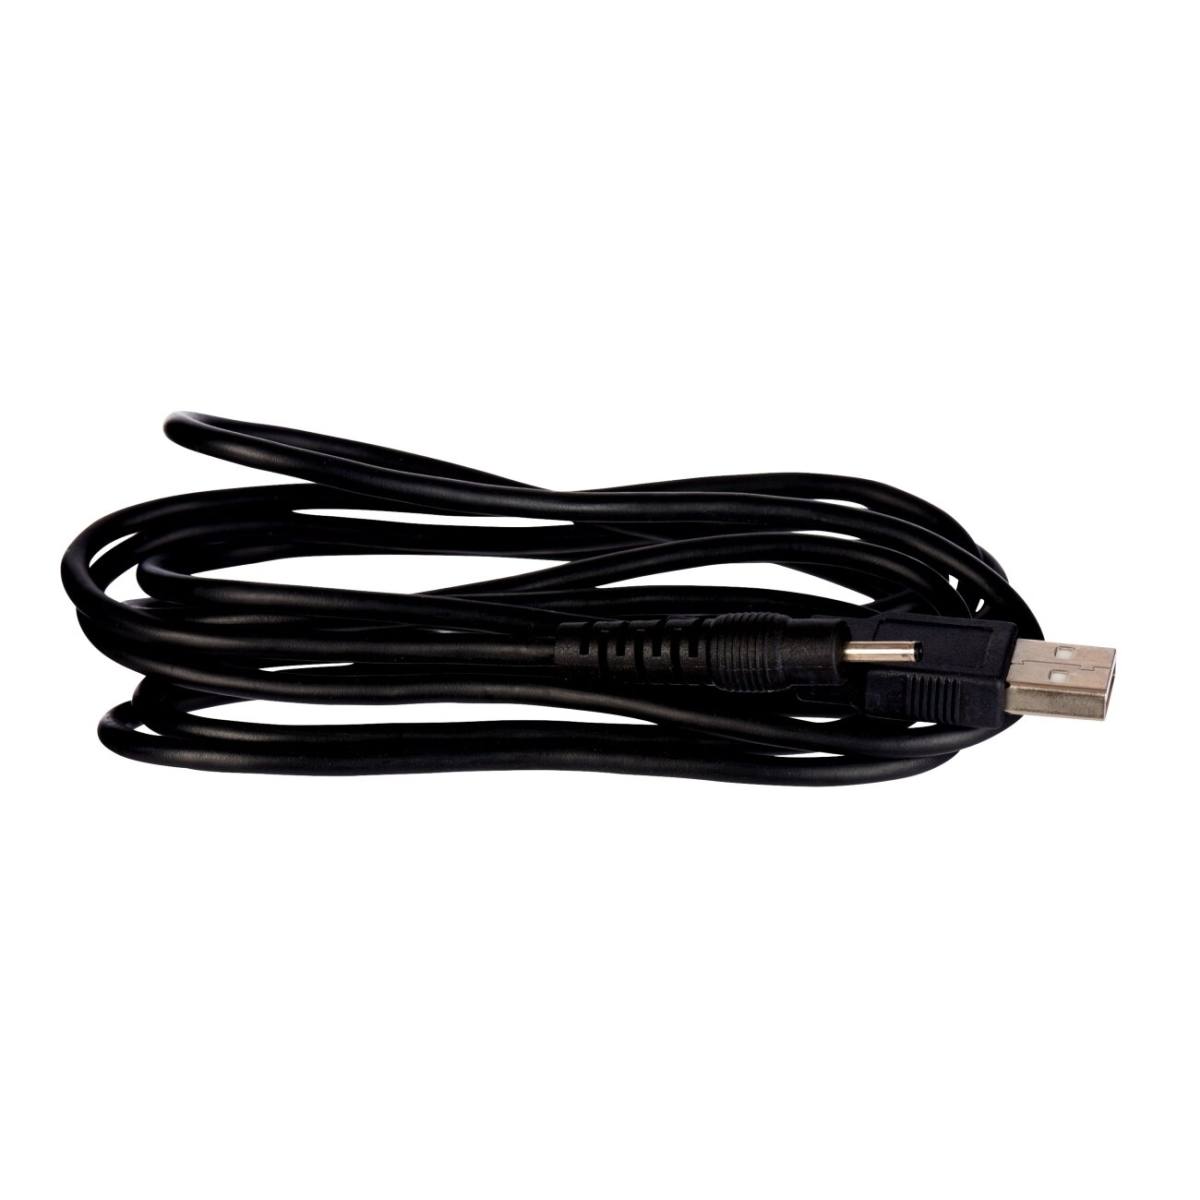 3M PELTOR USB charging cable AL2AI/SP